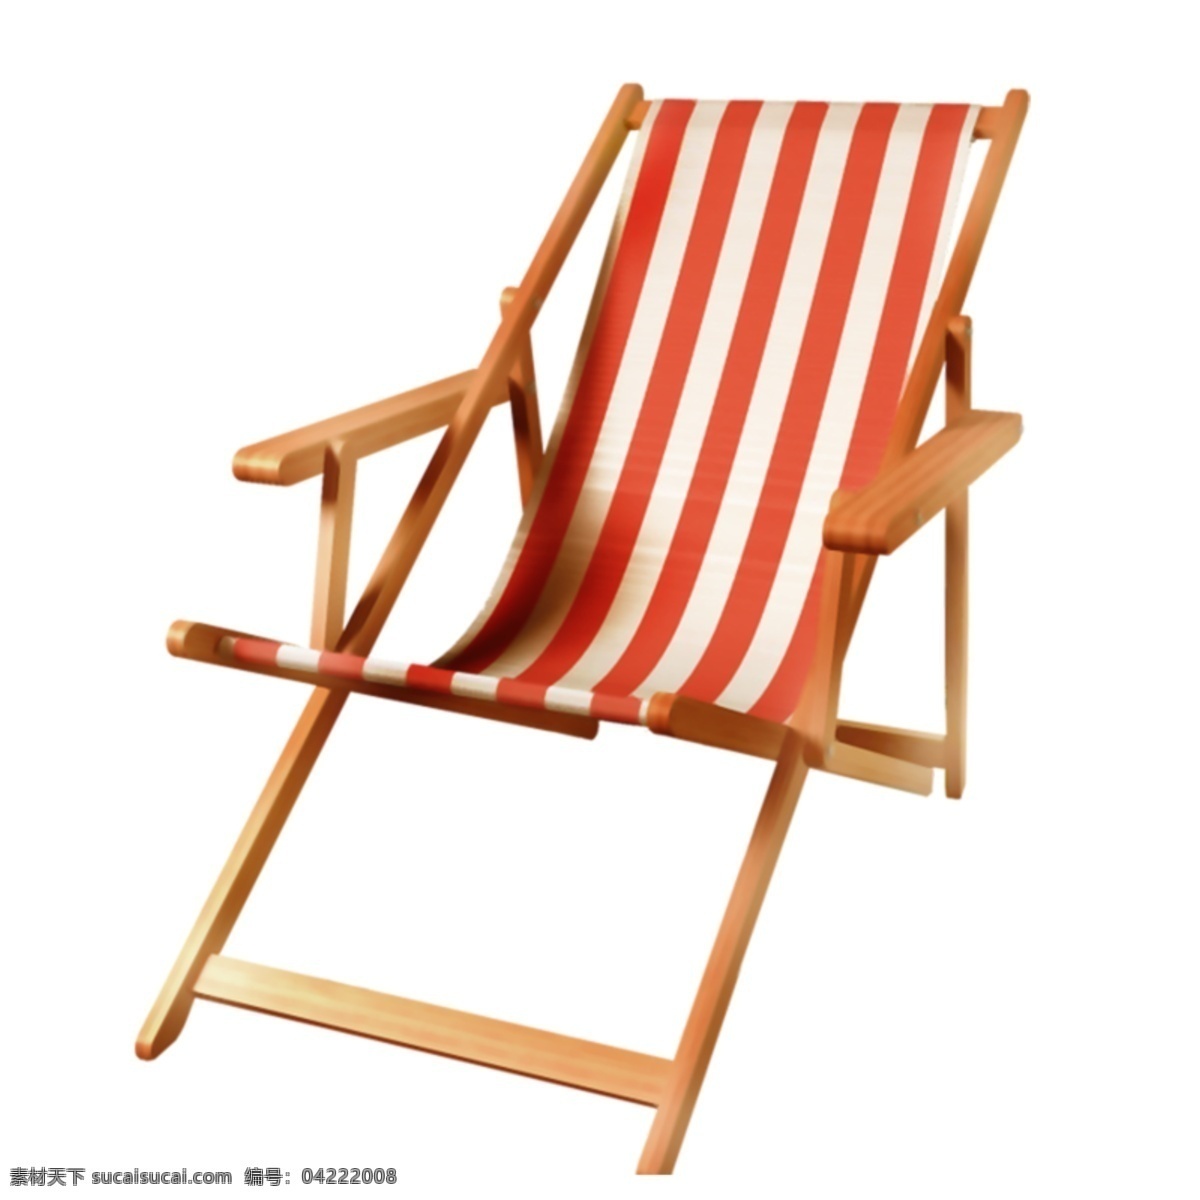 沙滩椅 椅子 懒人椅 木头椅 卡通 动漫风 分层